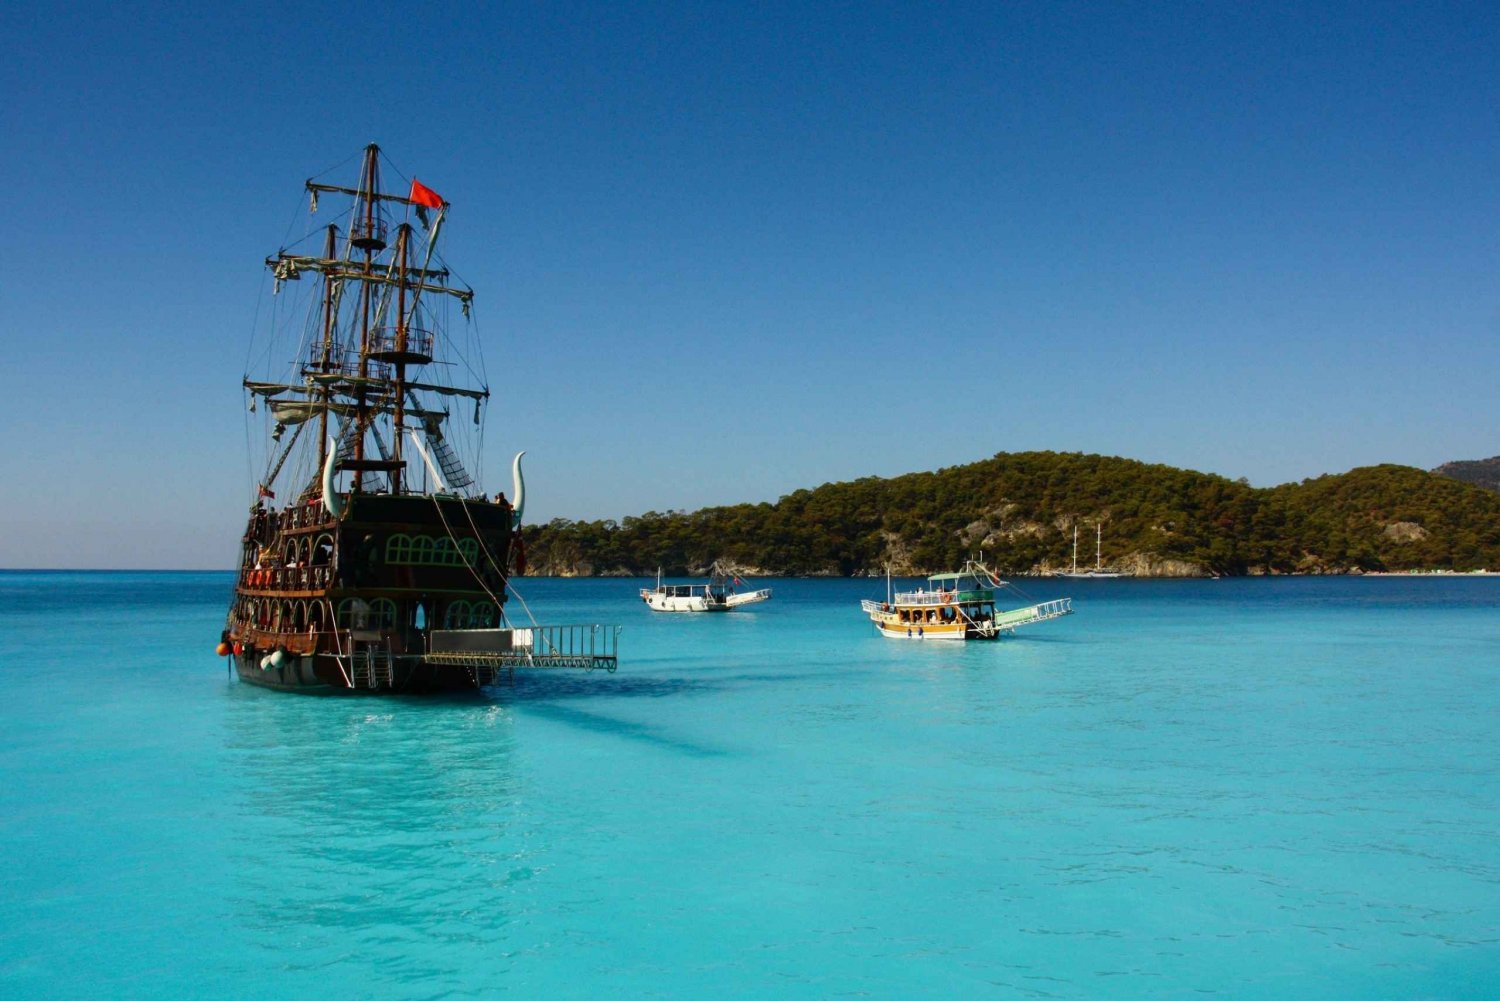 Ölüdeniz: Cruzeiro de barco pirata com paradas para nadar e almoço